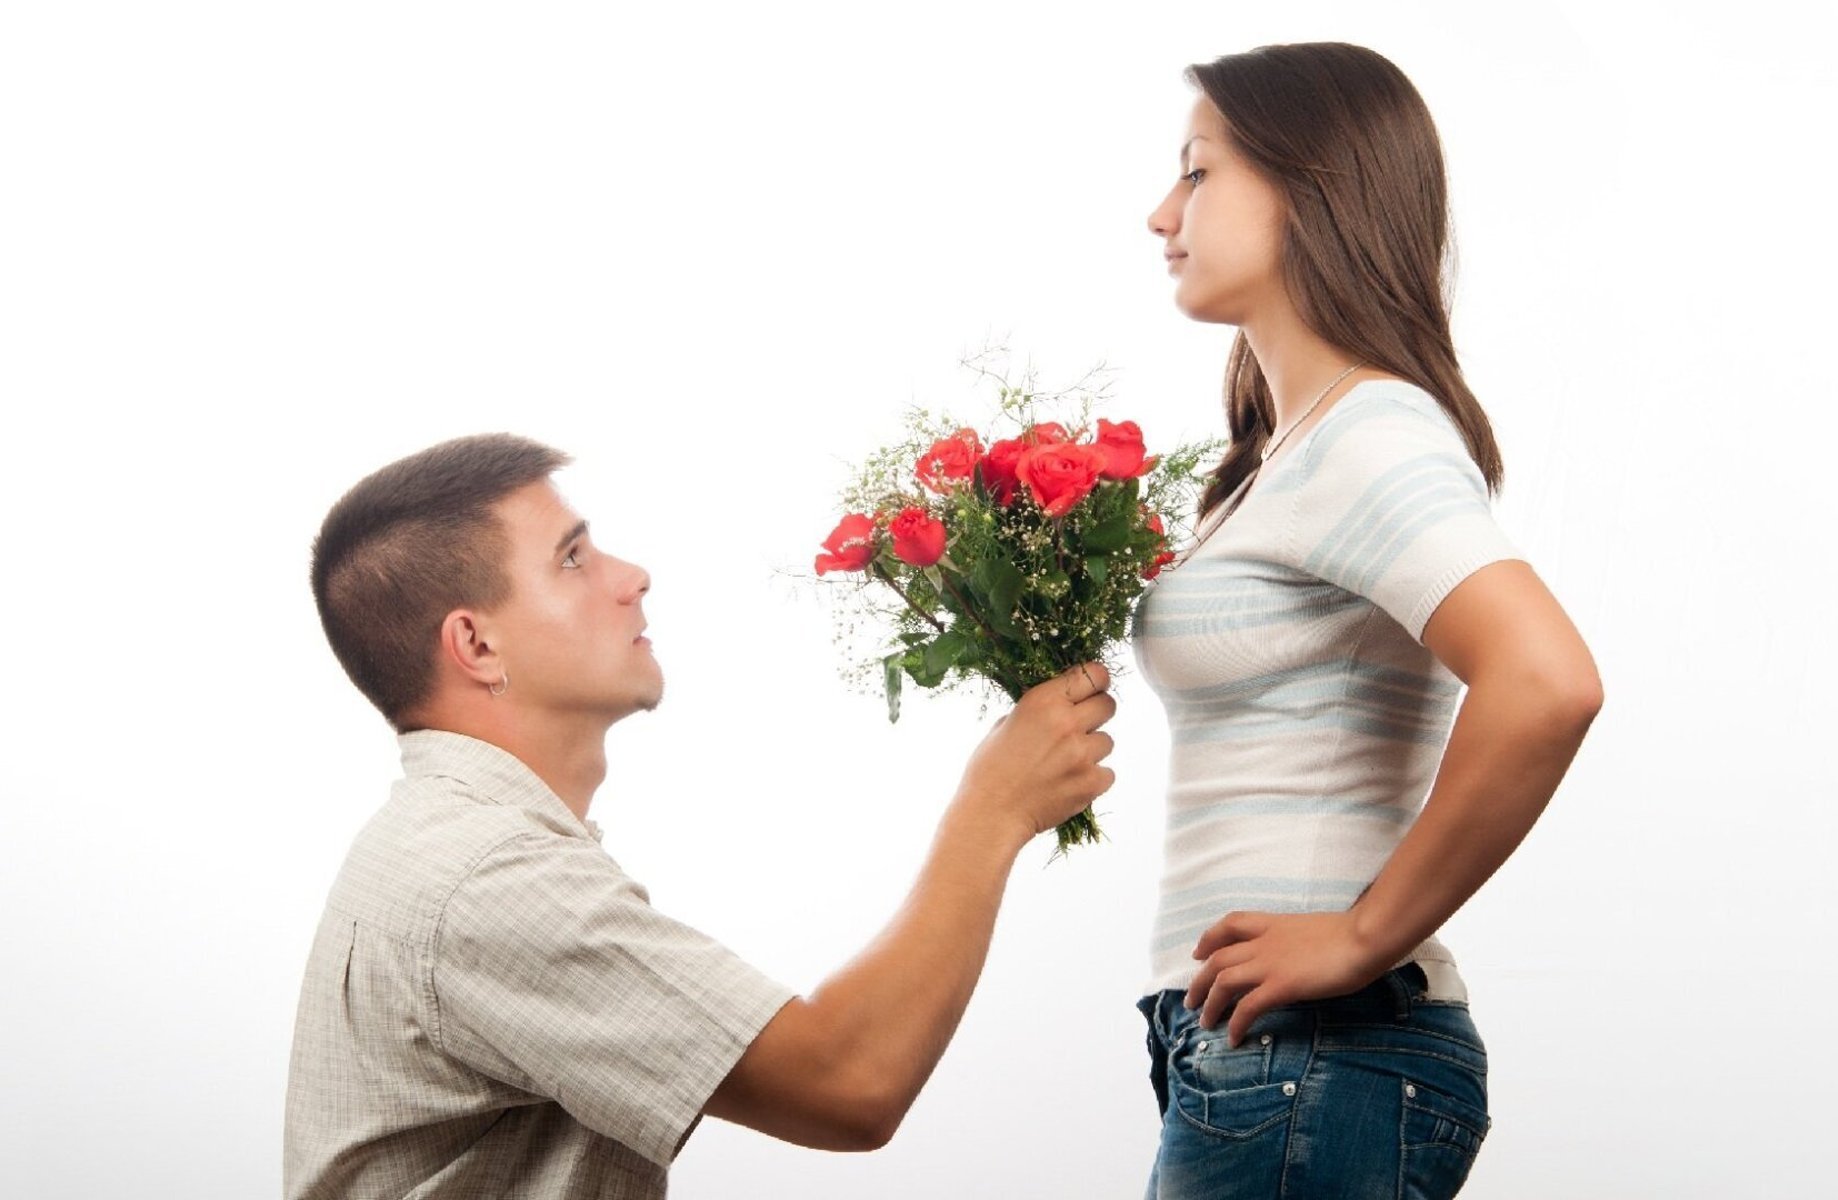 Как женщины проявляют симпатию. Парень даритдеаушке цветы. Парень дарит девушке цветы. Девушке дарят цветы. Мужчина дарит цветы женщине.